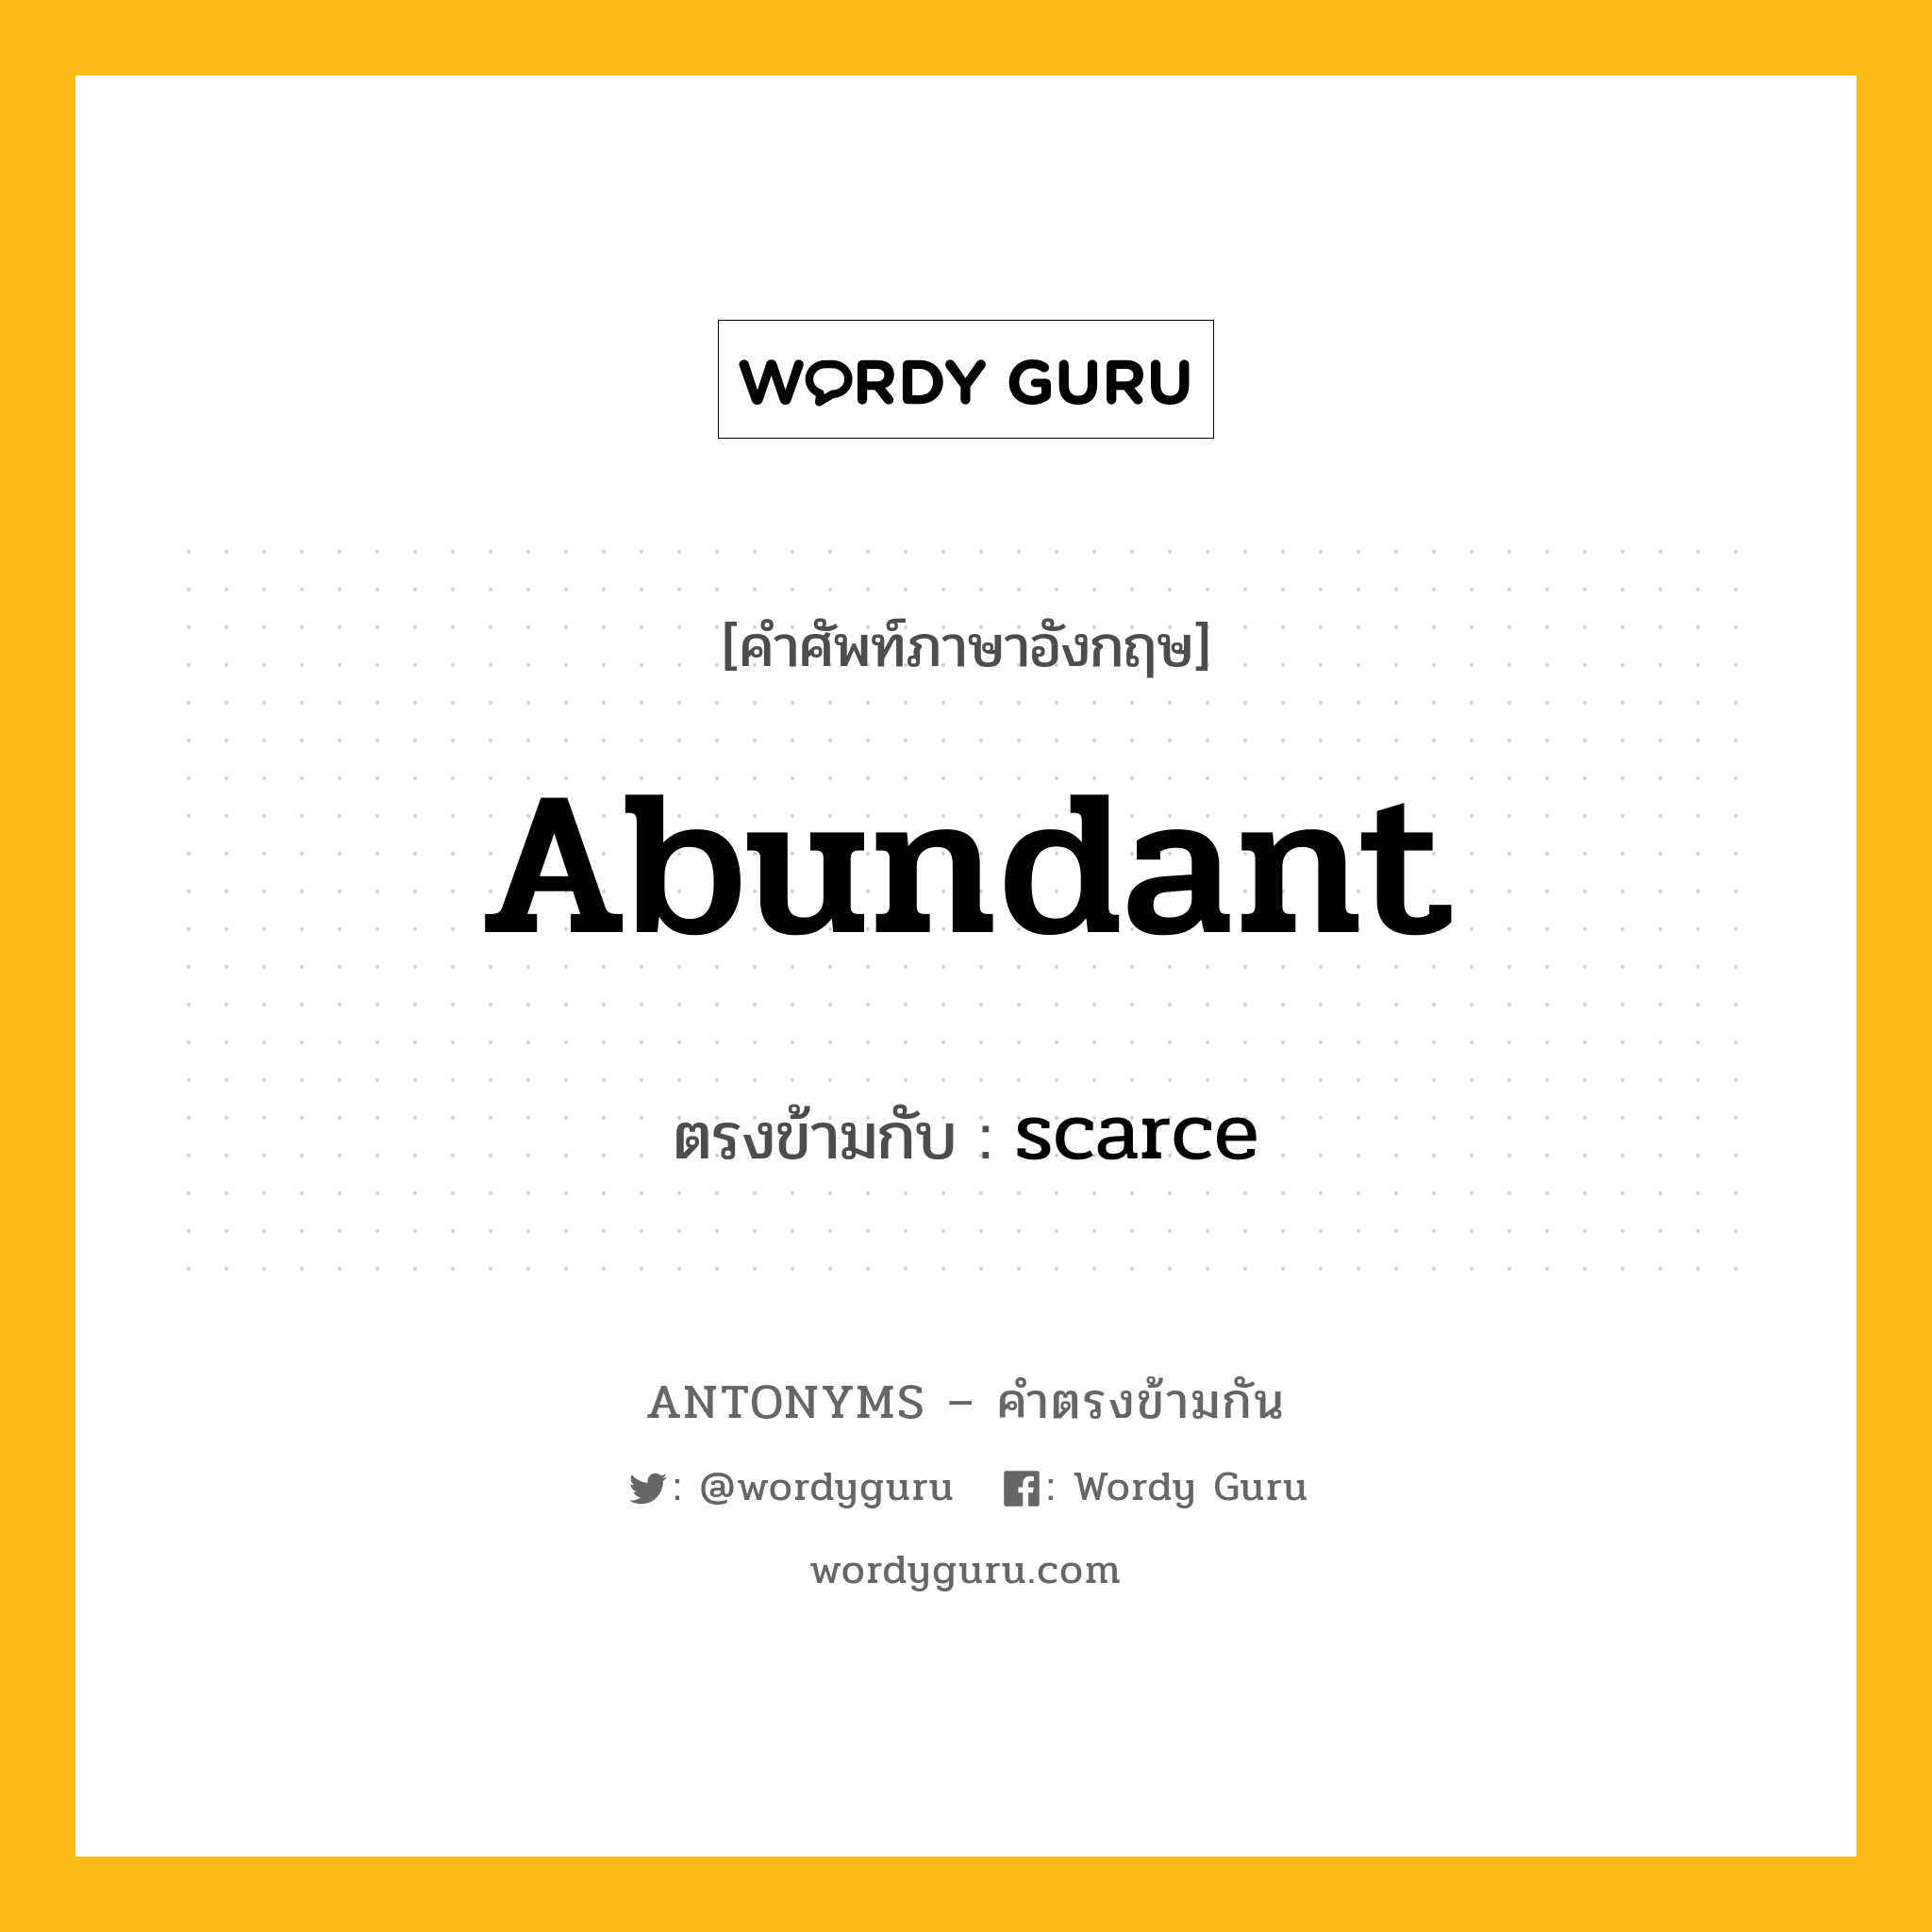 abundant เป็นคำตรงข้ามกับคำไหนบ้าง?, คำศัพท์ภาษาอังกฤษ abundant ตรงข้ามกับ scarce หมวด scarce